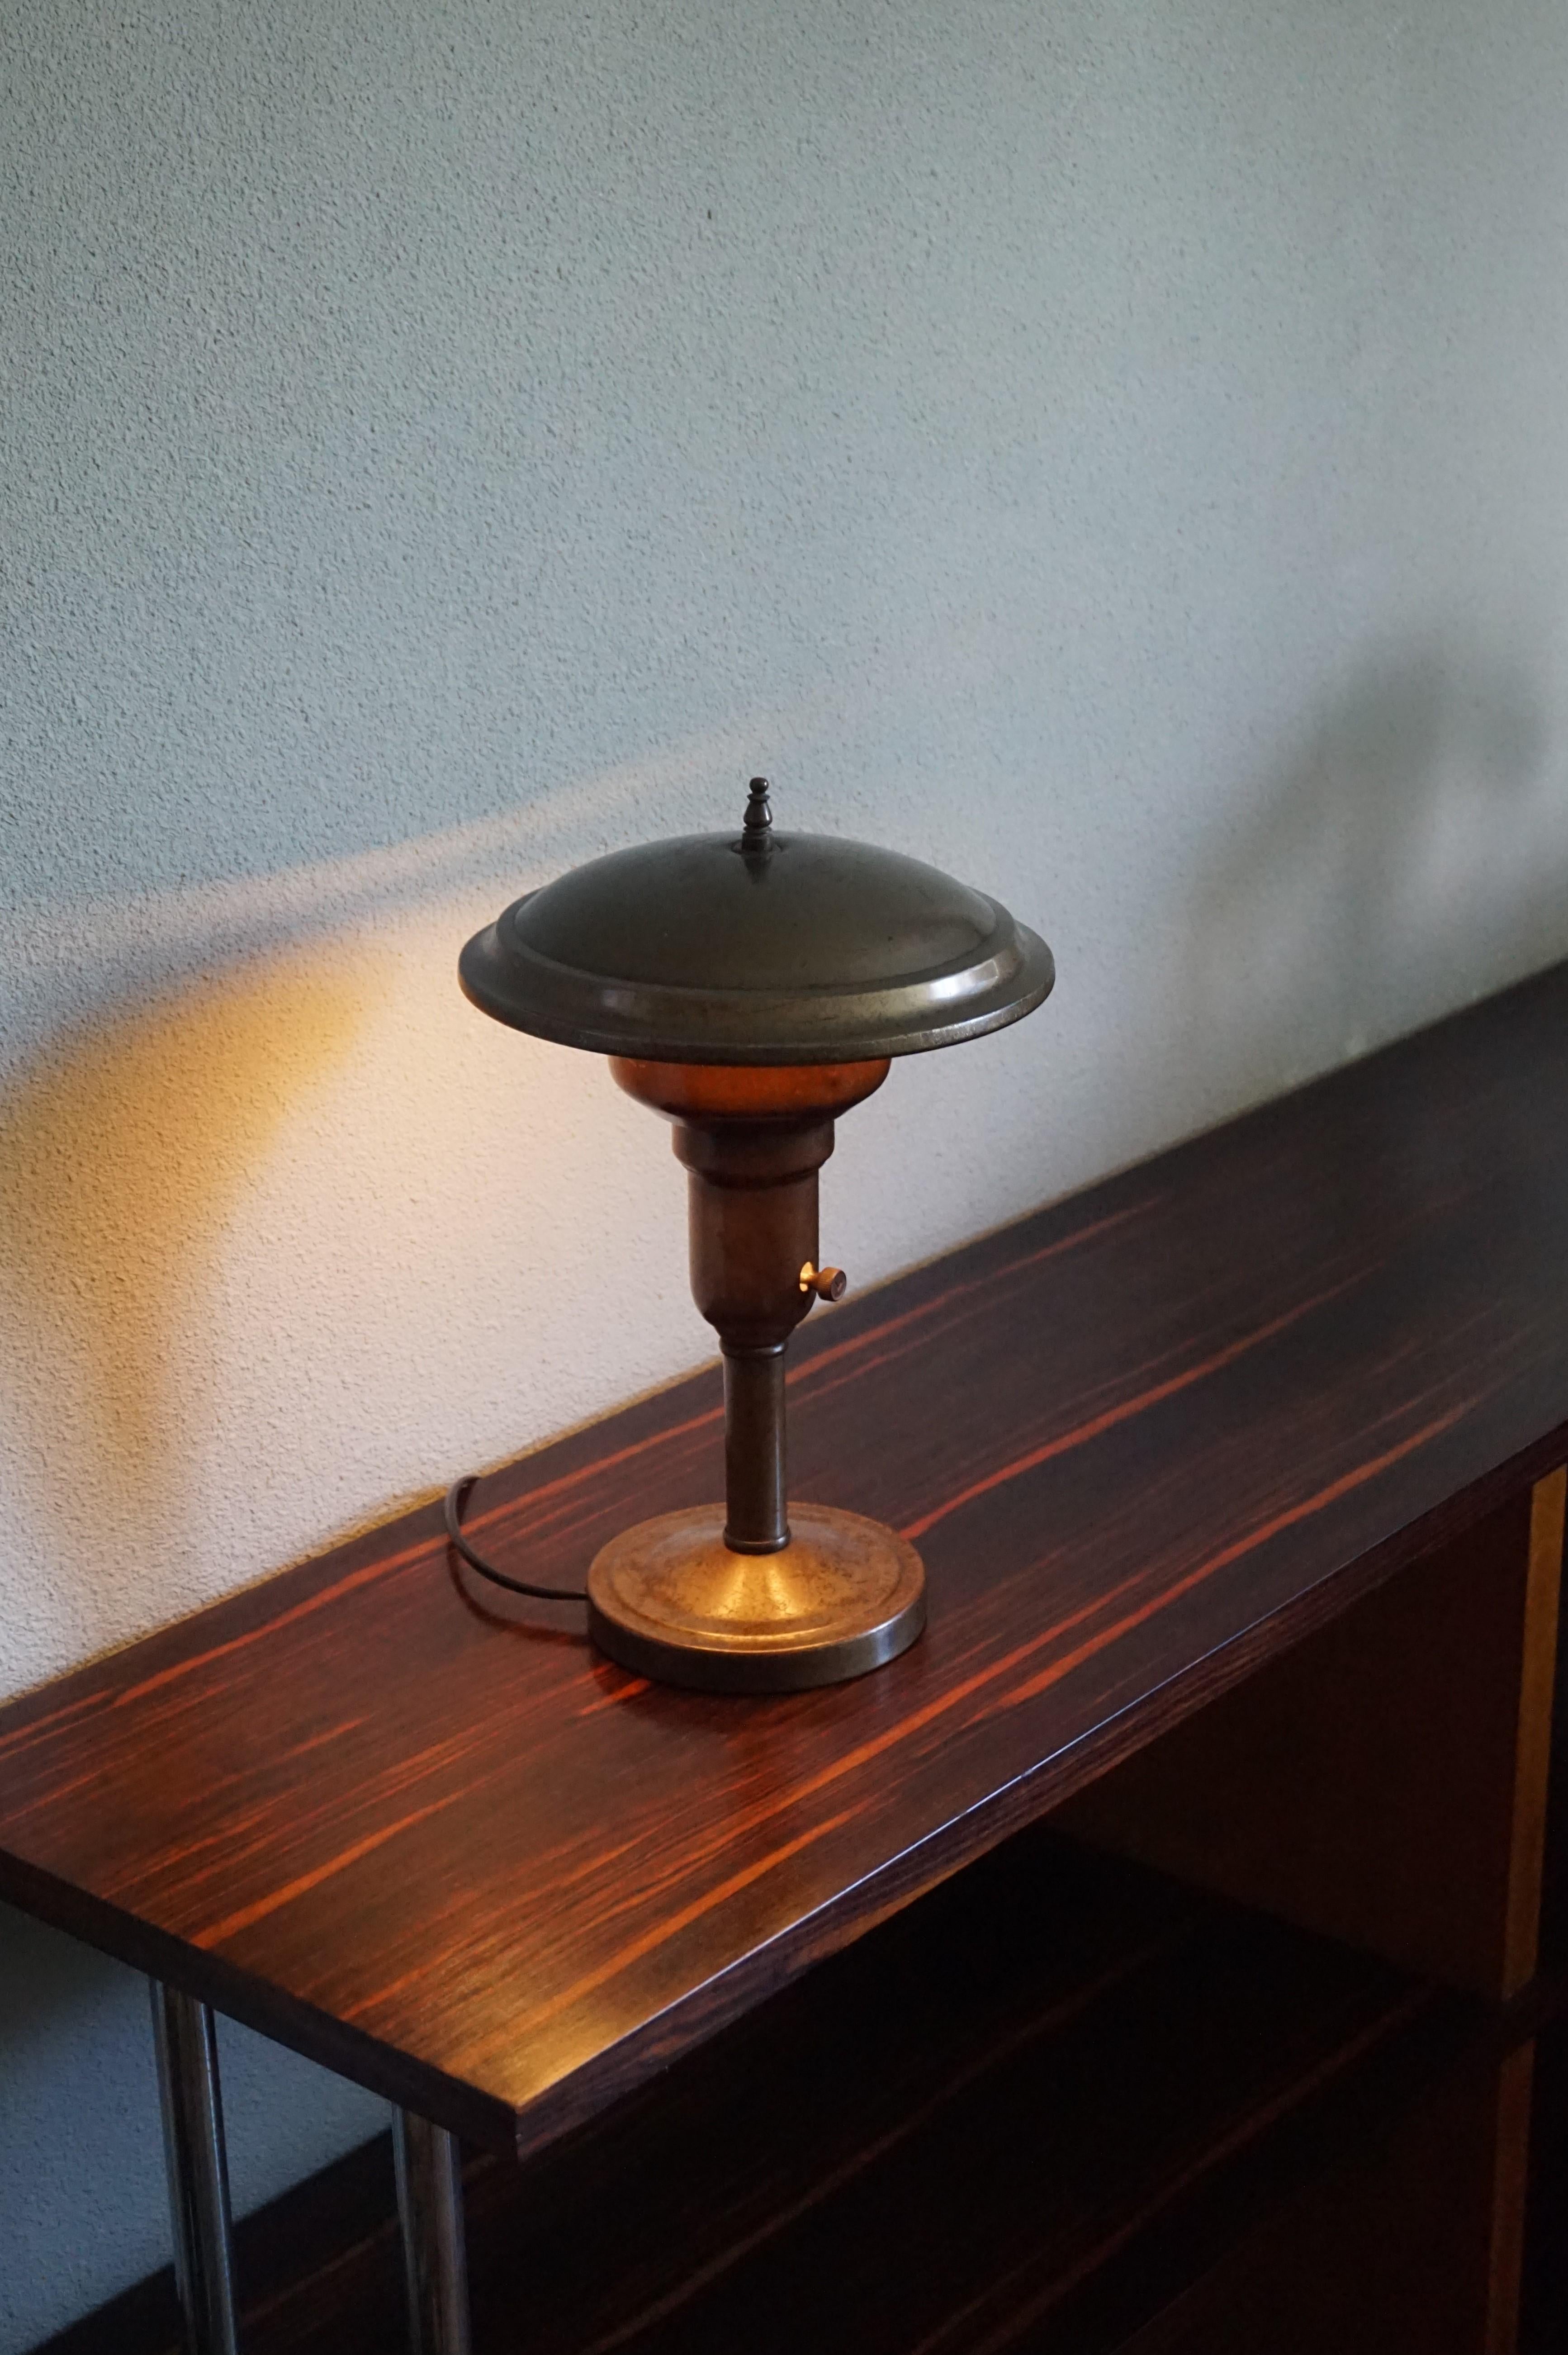 Lampe de bureau Art Déco de taille pratique avec un look et un toucher merveilleux.

Les lampes de table du passé ont quelque chose que l'on ne trouve pas dans les lampes modernes. Si vous n'avez pas le bon œil, cette lampe de bureau des années 1920